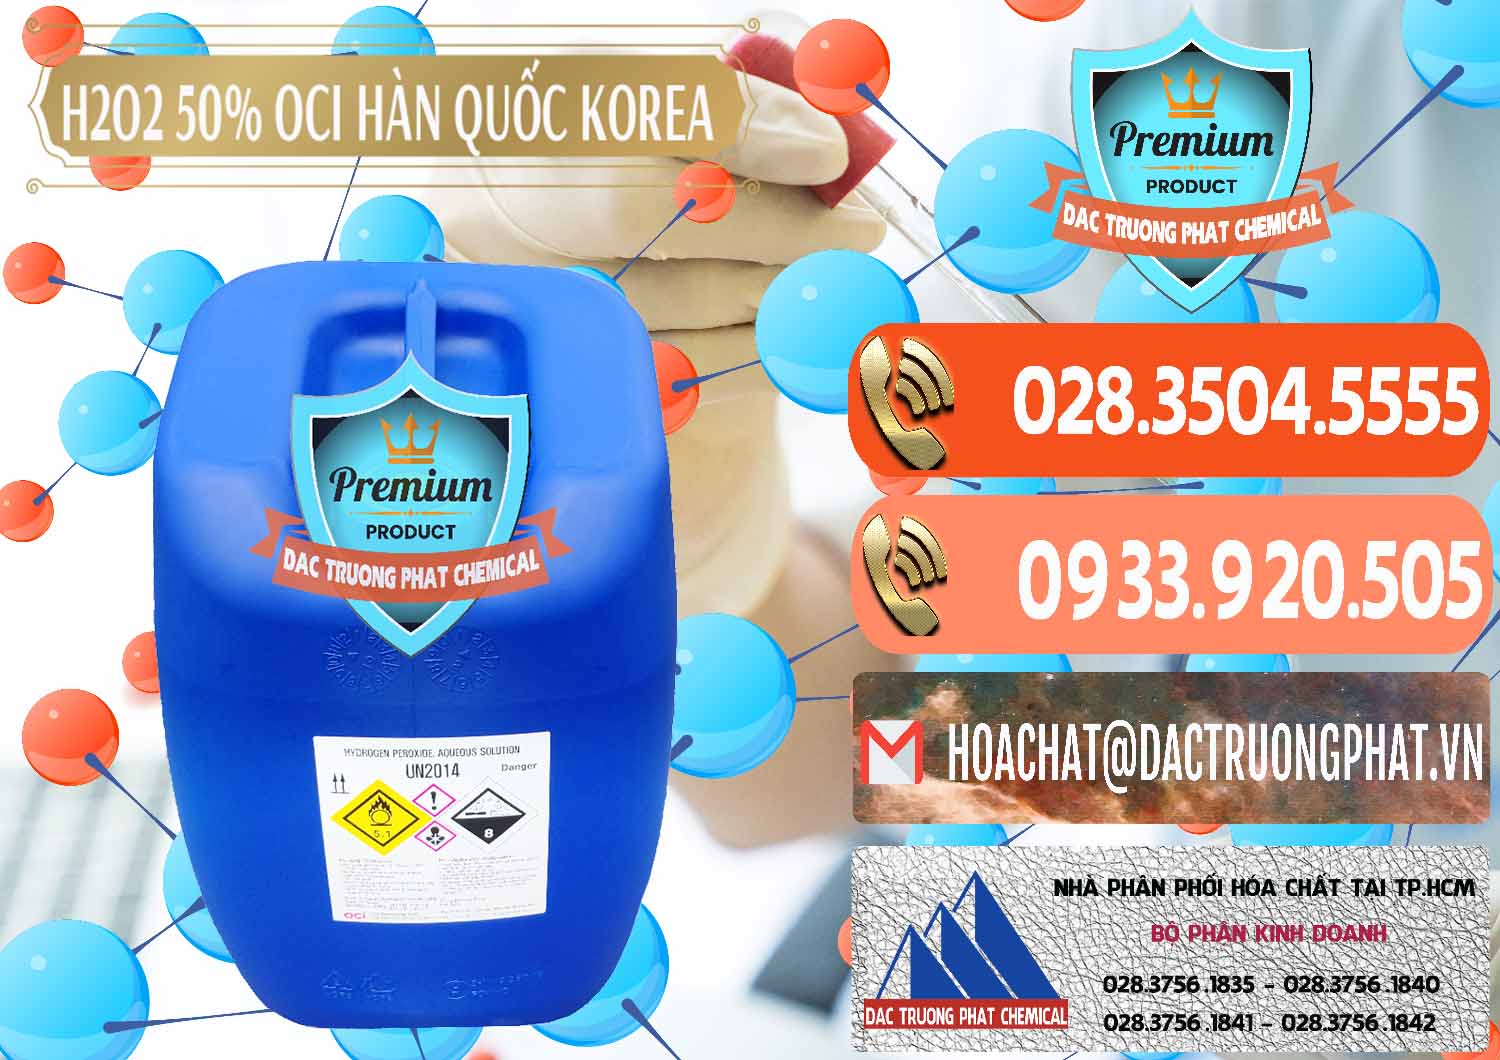 Nơi kinh doanh _ bán H2O2 - Hydrogen Peroxide 50% OCI Hàn Quốc Korea - 0075 - Công ty chuyên cung cấp ( bán ) hóa chất tại TP.HCM - hoachatmientay.com